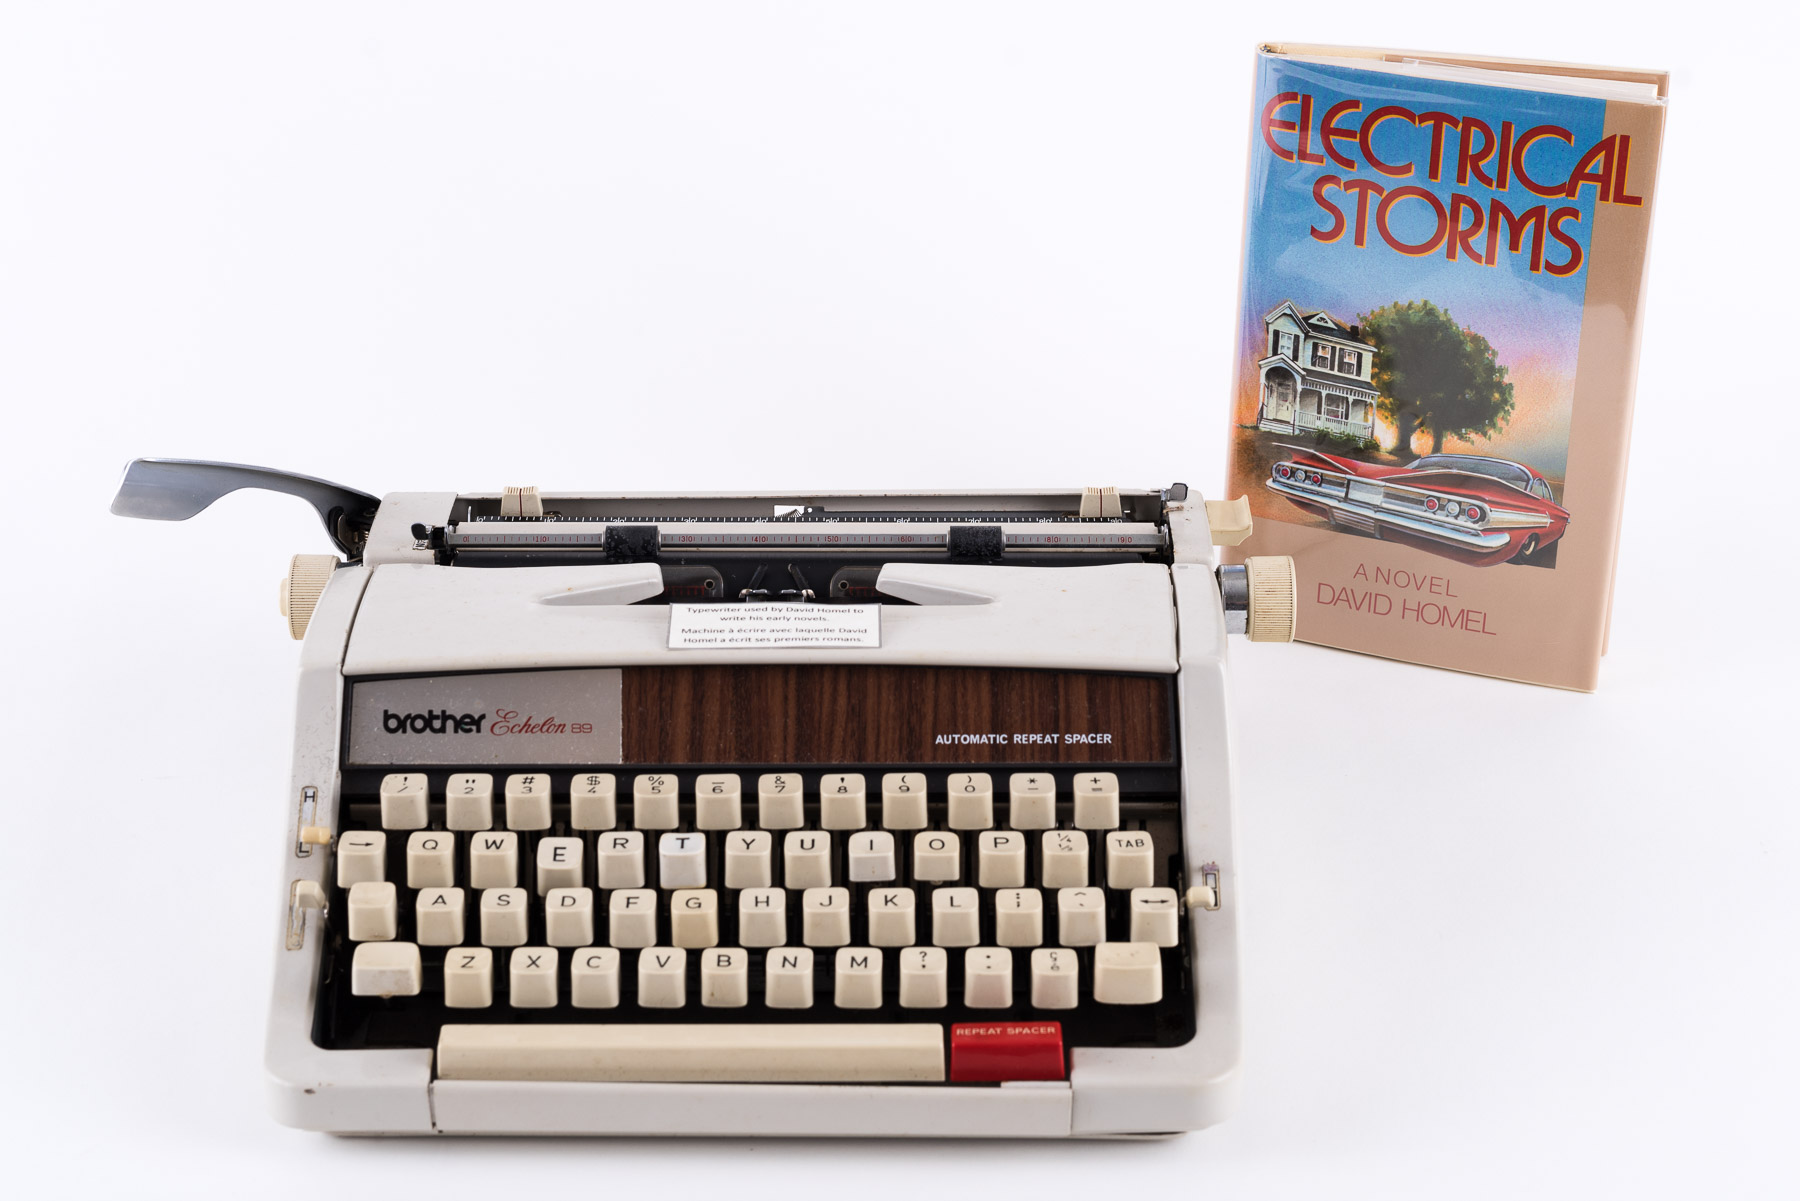 Typewriter David Homel used to write Electrical Storms.